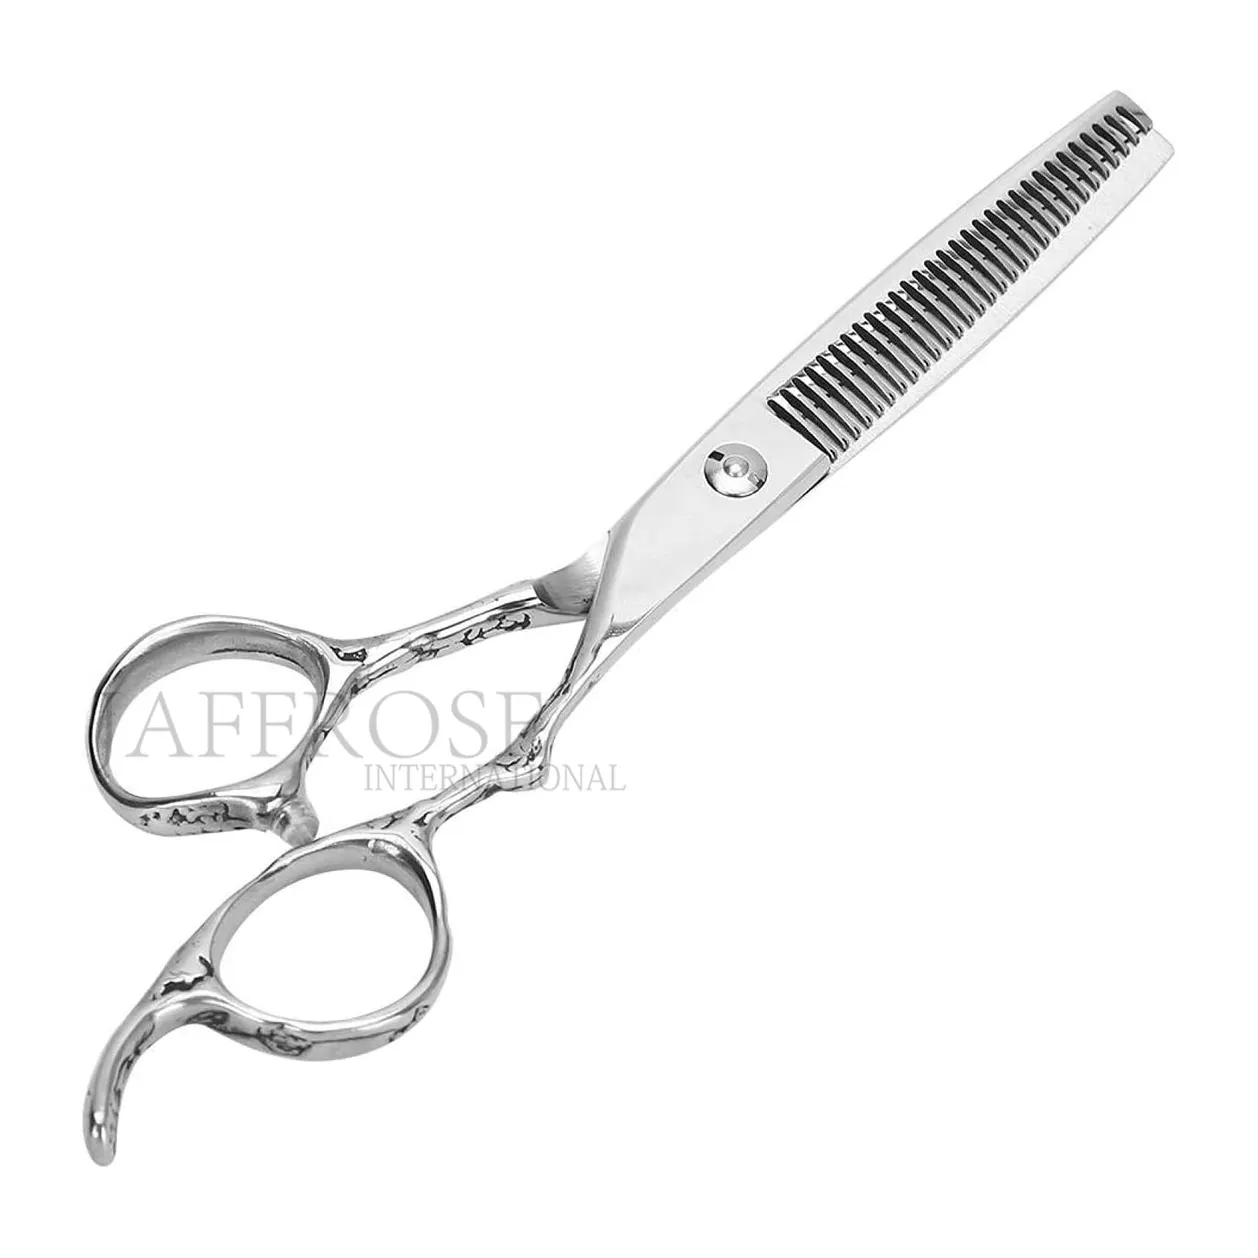 Hair Cutting Shears 6 Inch Professional Japan 440c Steel Gold Scissor Crown Hair Scissors Cutting Barber Haircut Thinning Shears